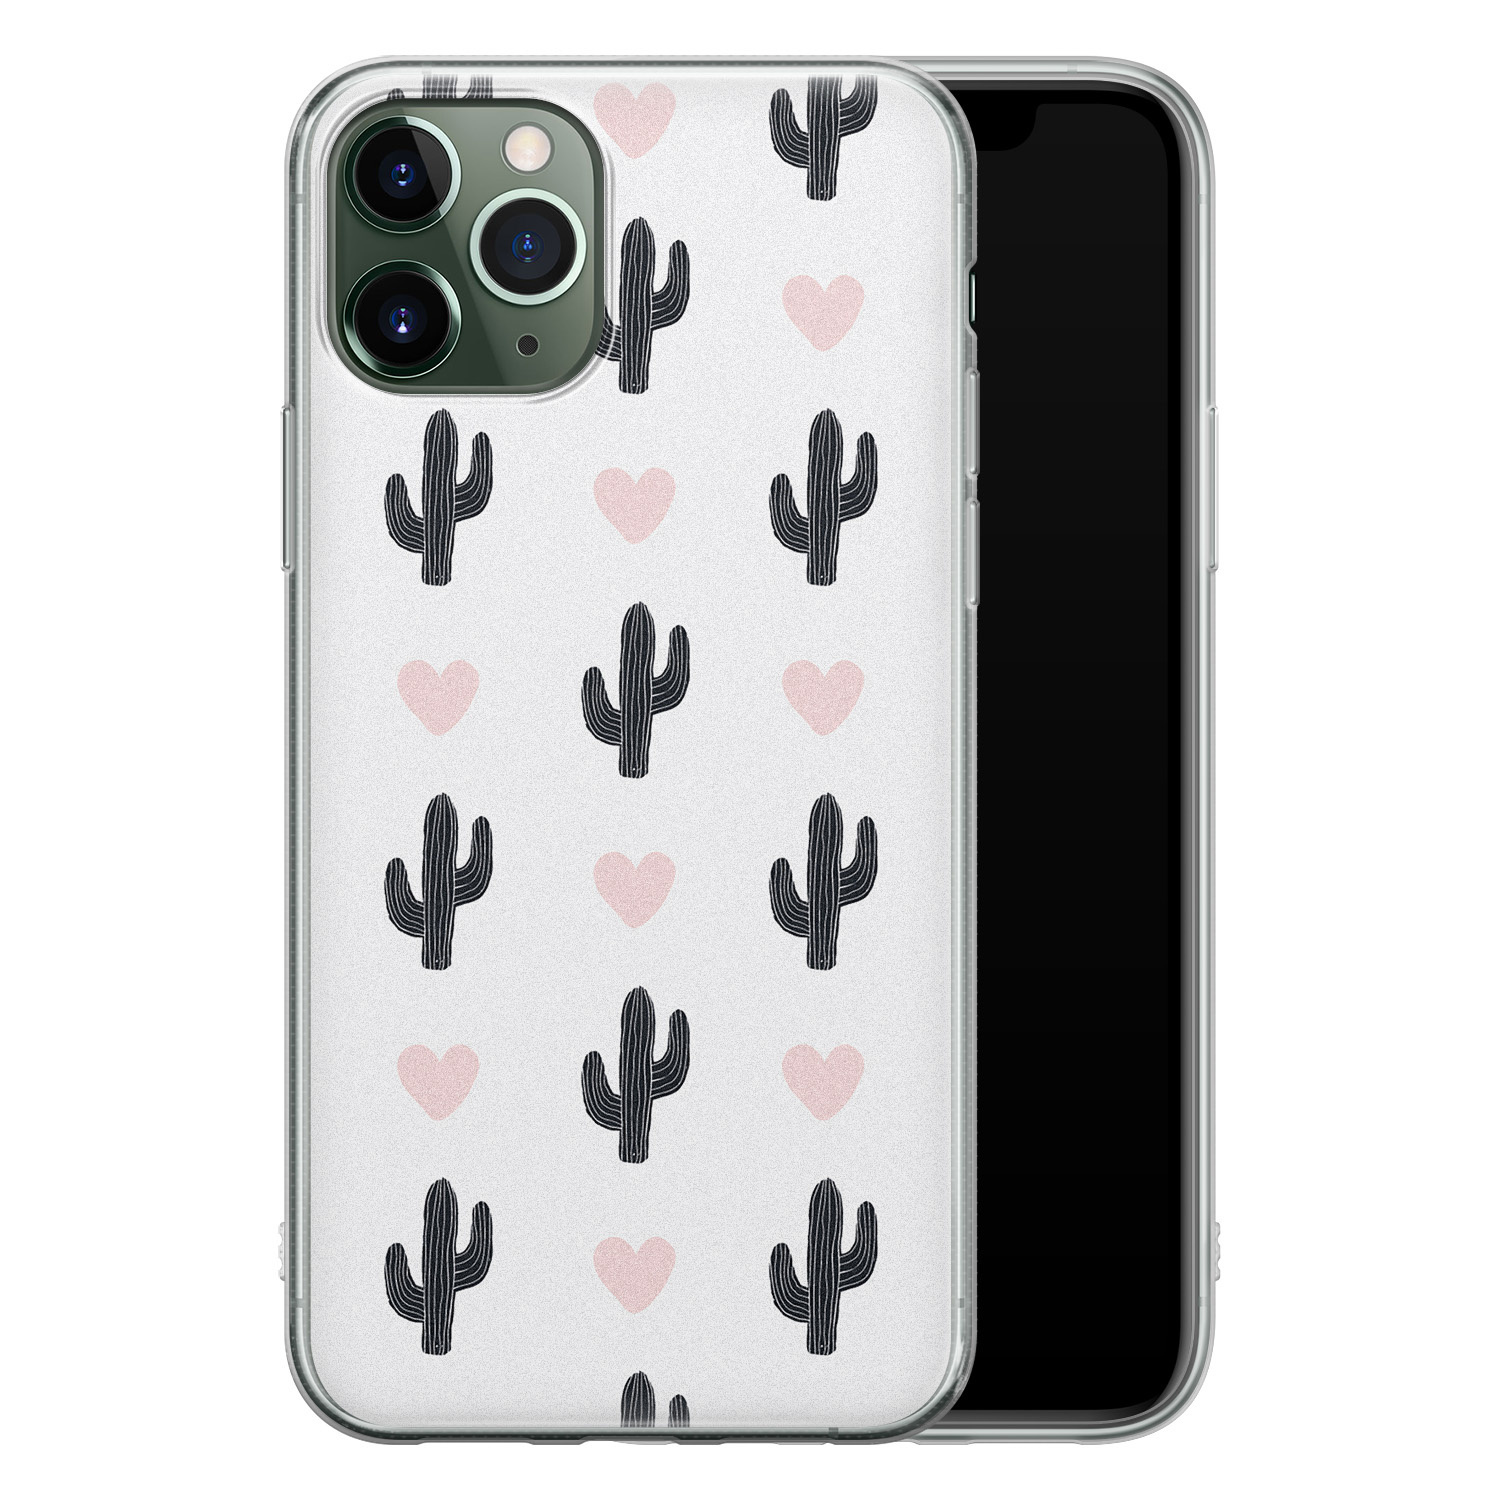 Leuke Telefoonhoesjes iPhone 11 Pro Max siliconen hoesje - Cactus hartjes